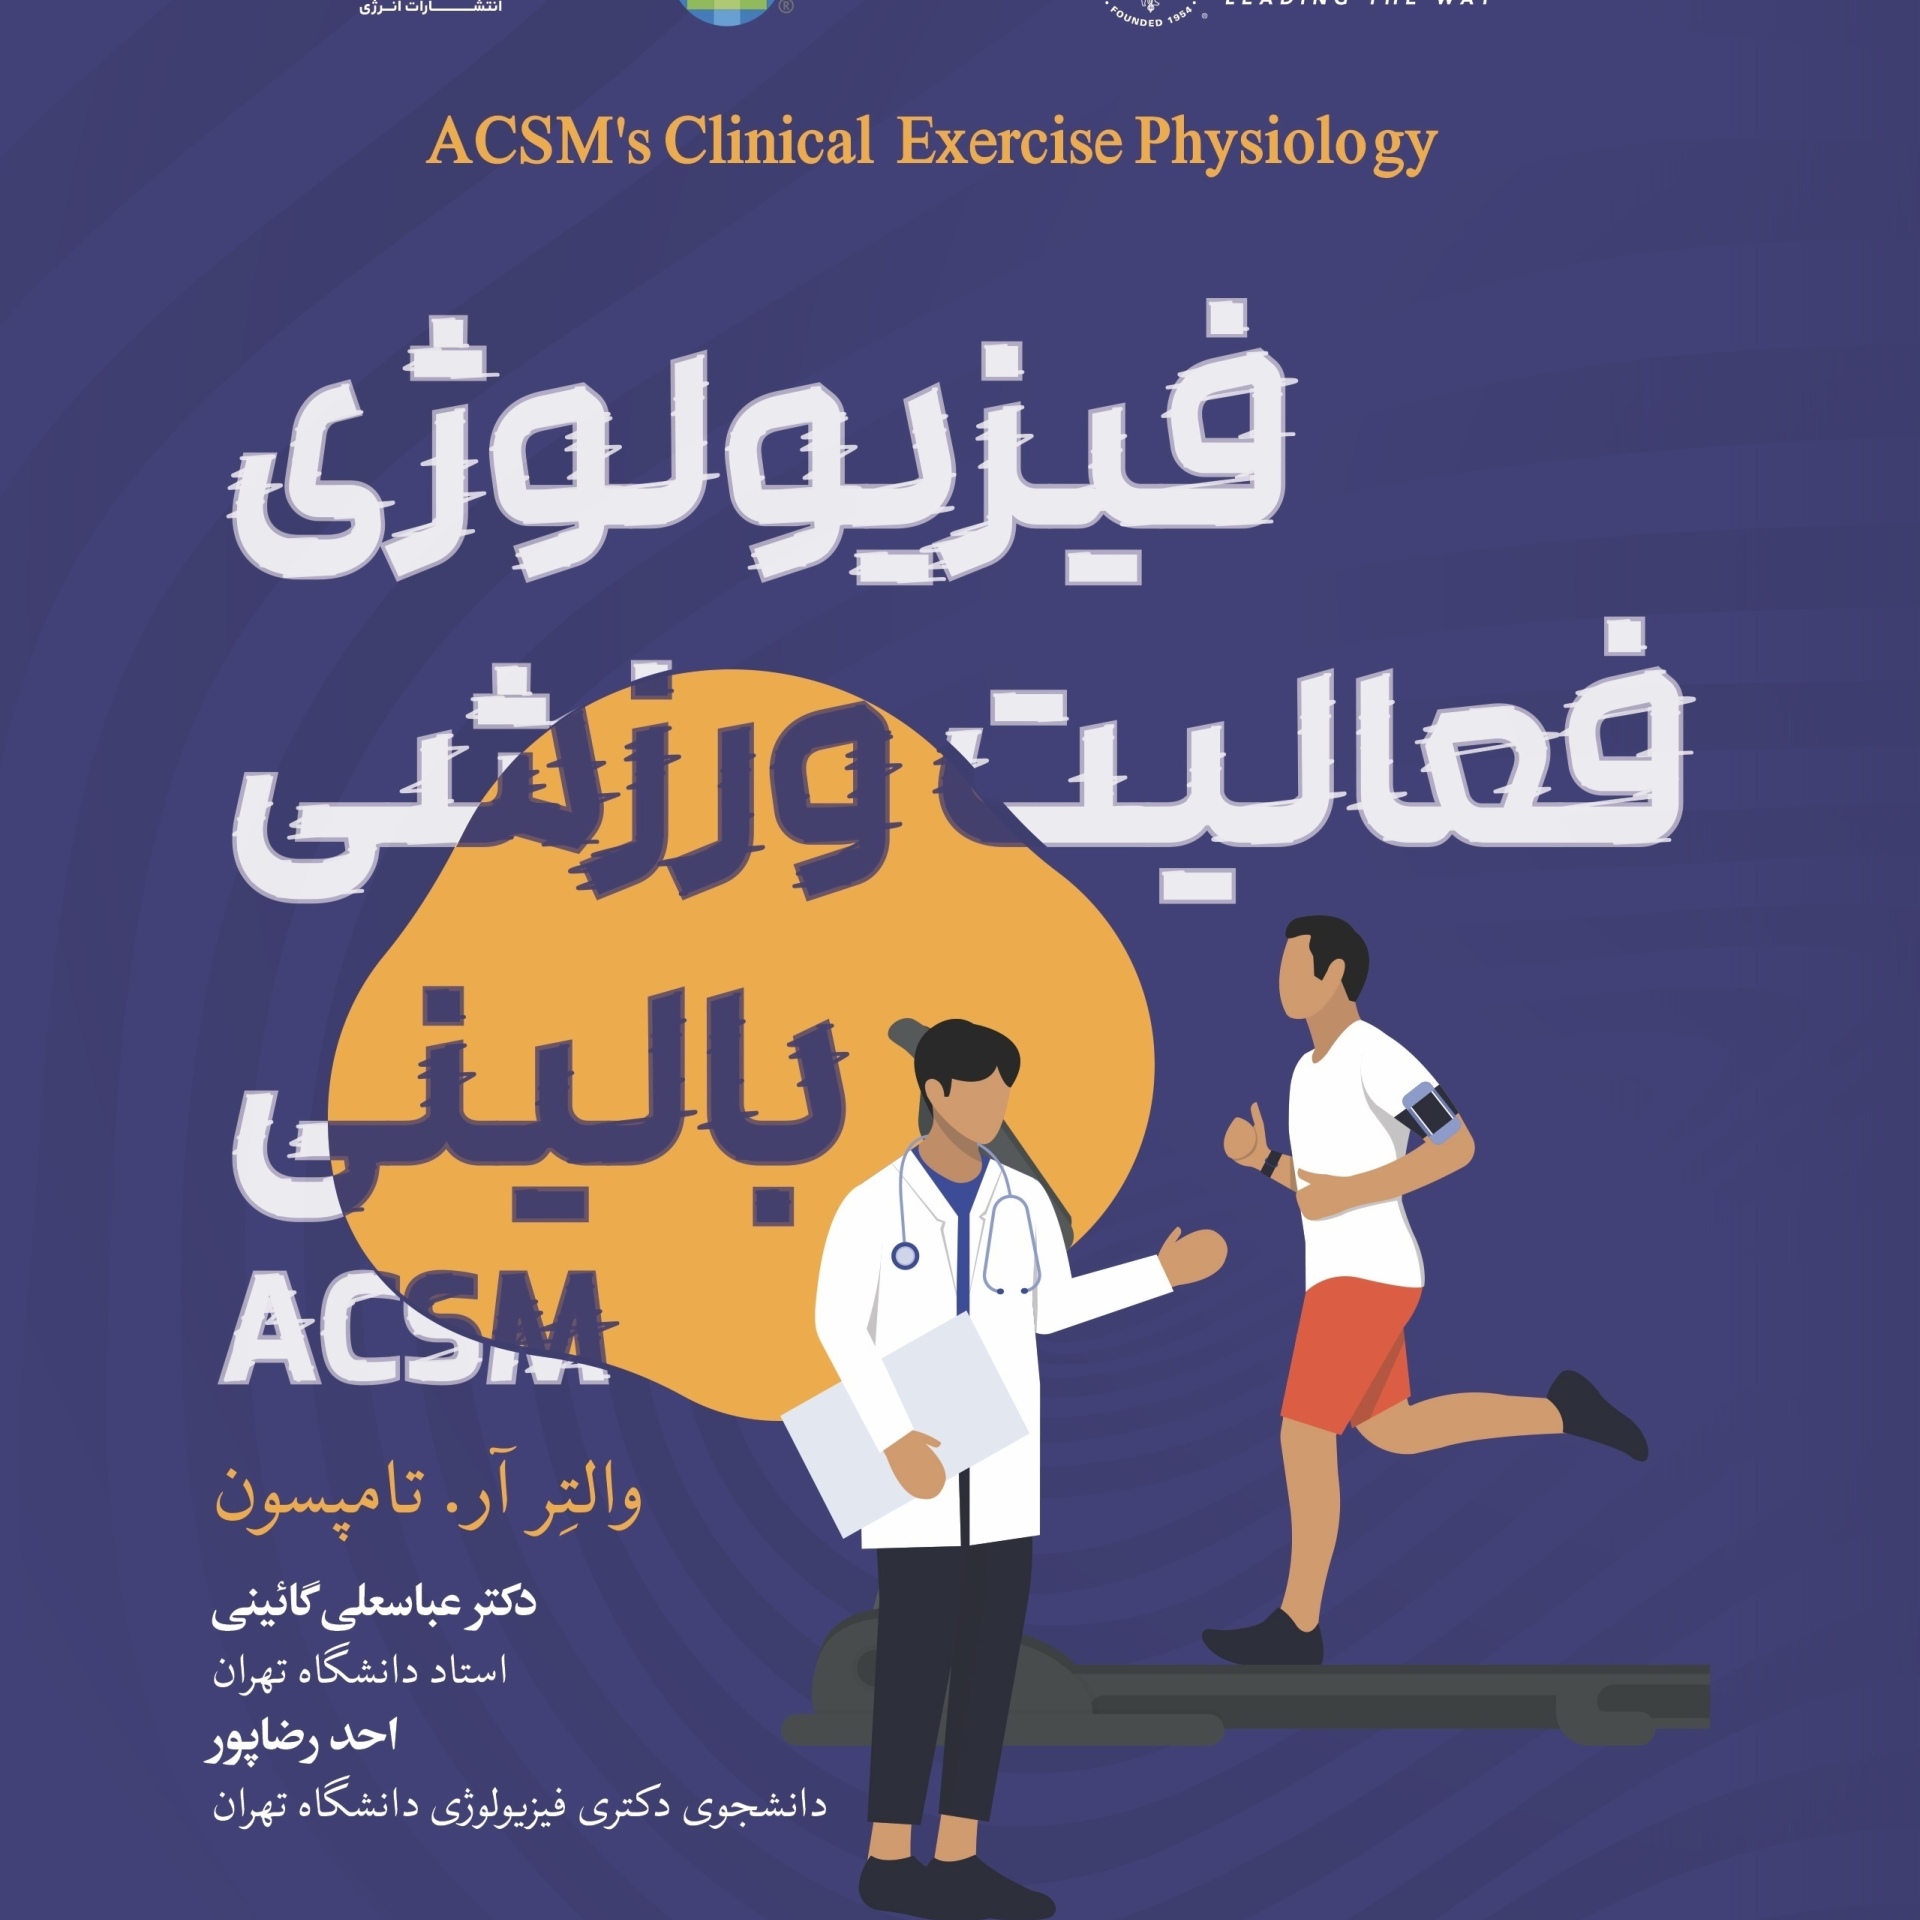 کتاب فیزیولوژی فعالیت ورزشی بالینی ACSM ترجمه دکتر عباسعلی گائینی و احد رضاپور از انتشارات انرژی -- ACSM's Clinical Exercise Physiology